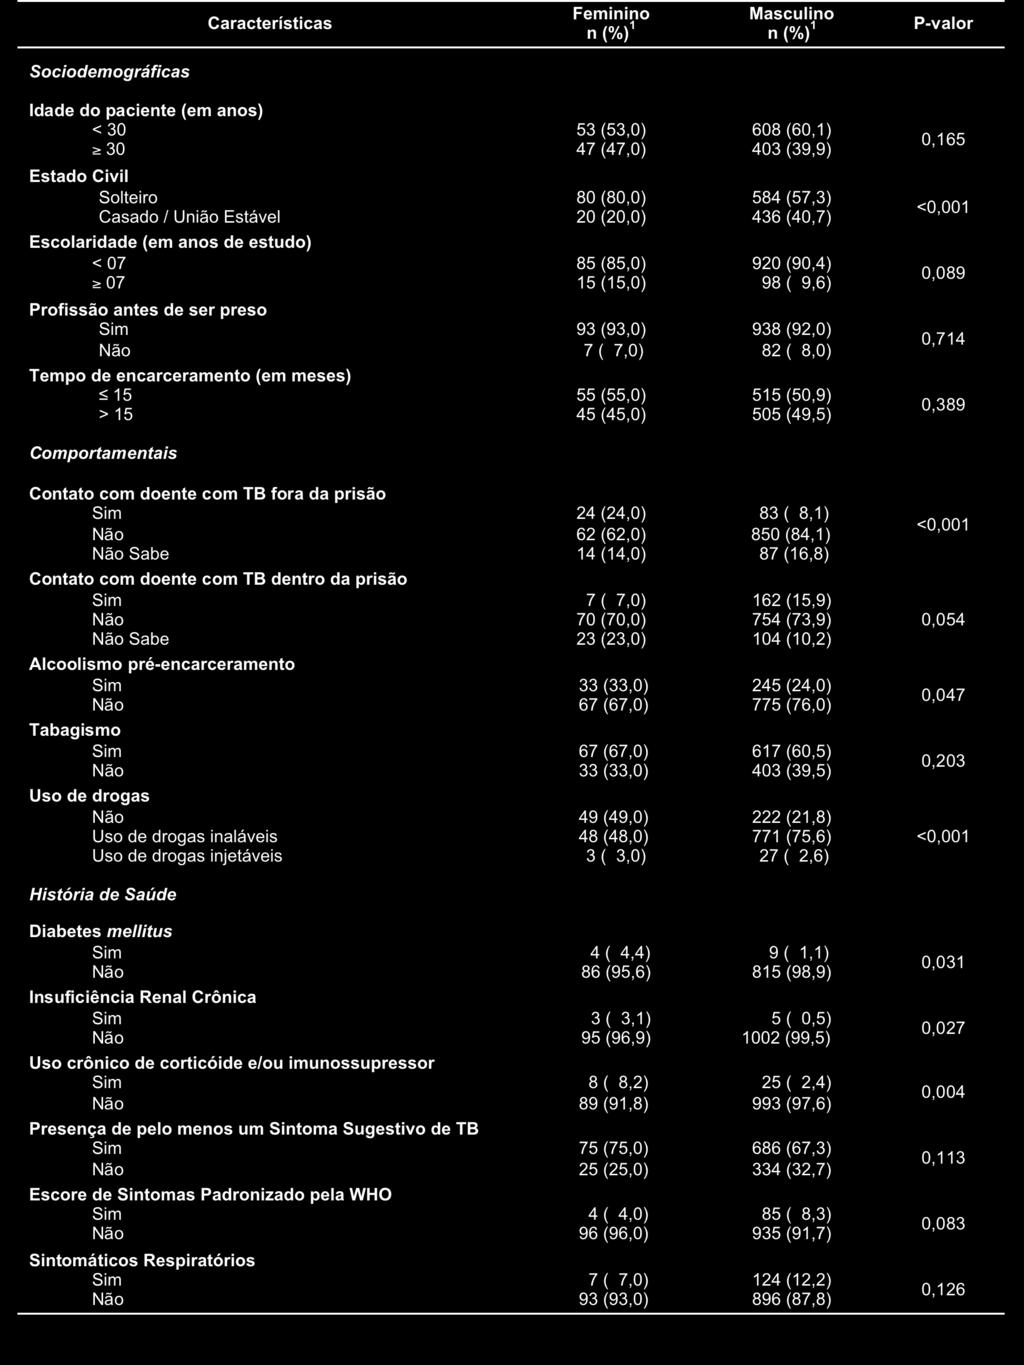 47 TABELA 1 Características Descritivas Estratificadas por Sexo da População Privada de Liberdade Estudada, Minas Gerais, Brasil, 2014 (n=1120). 1 Total varia de acordo com informação ignorada.